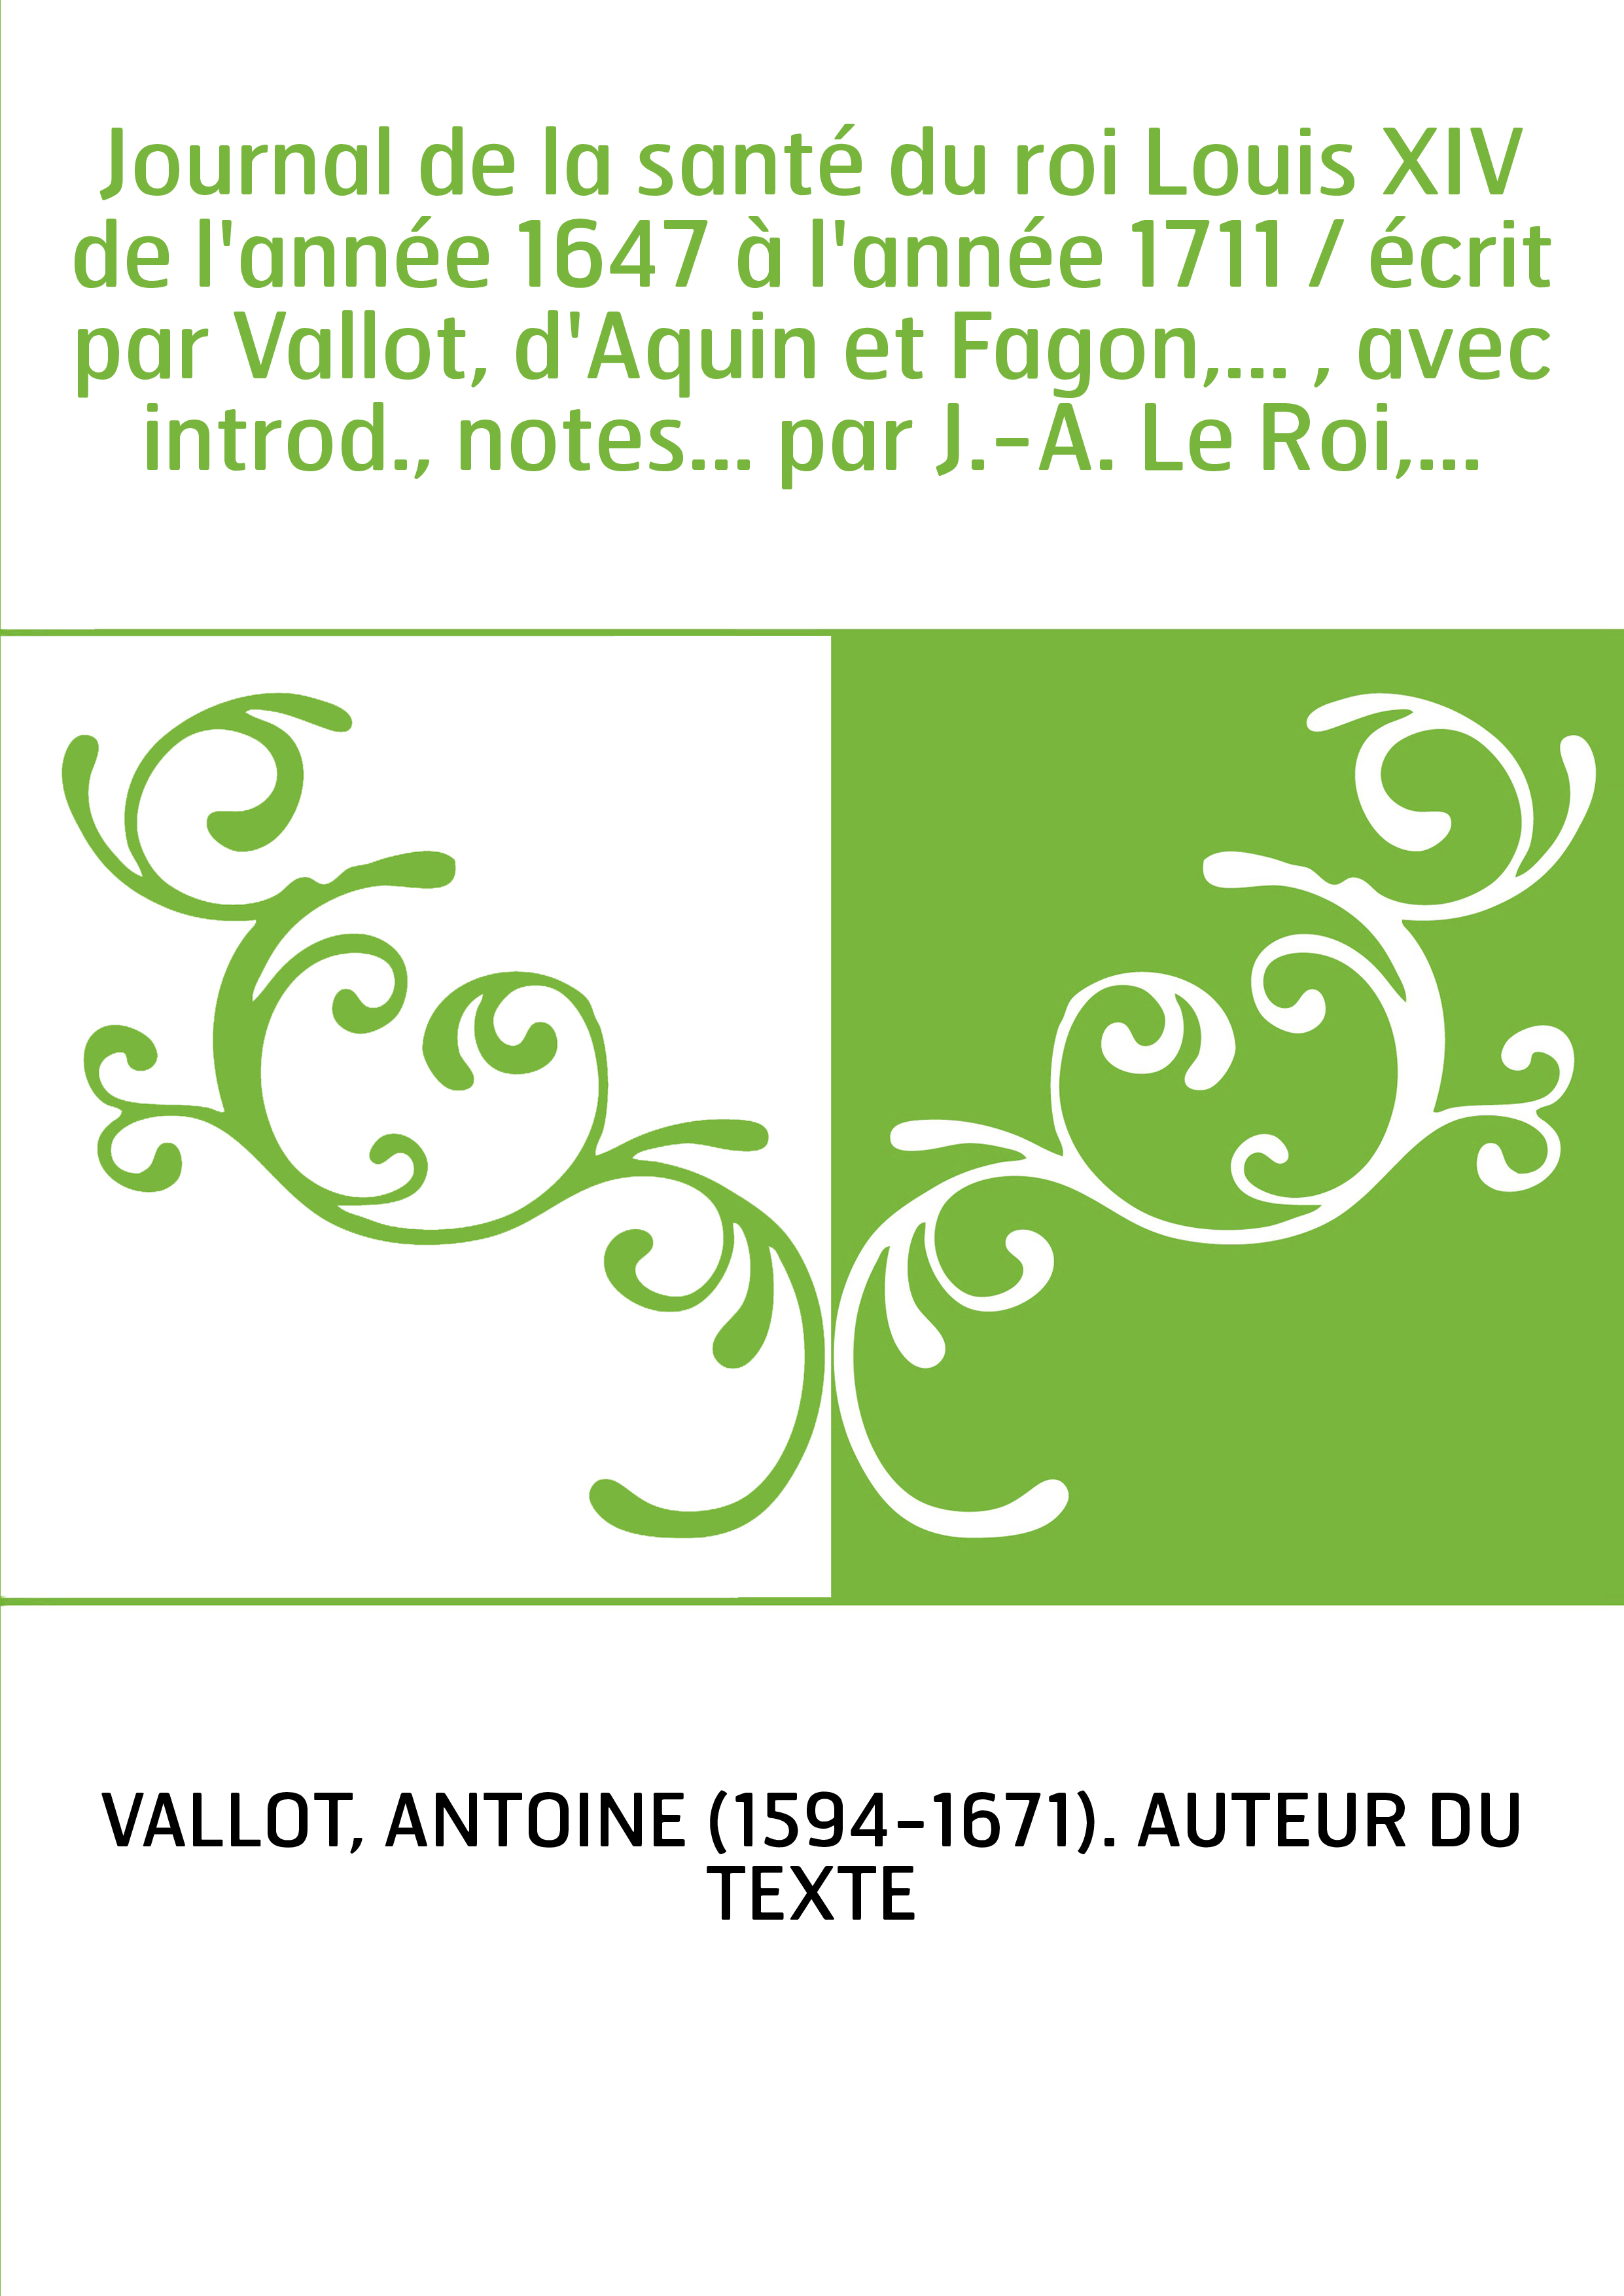 Journal de la santé du roi Louis XIV de l'année 1647 à l'année 1711 / écrit par Vallot, d'Aquin et Fagon,... , avec introd., not